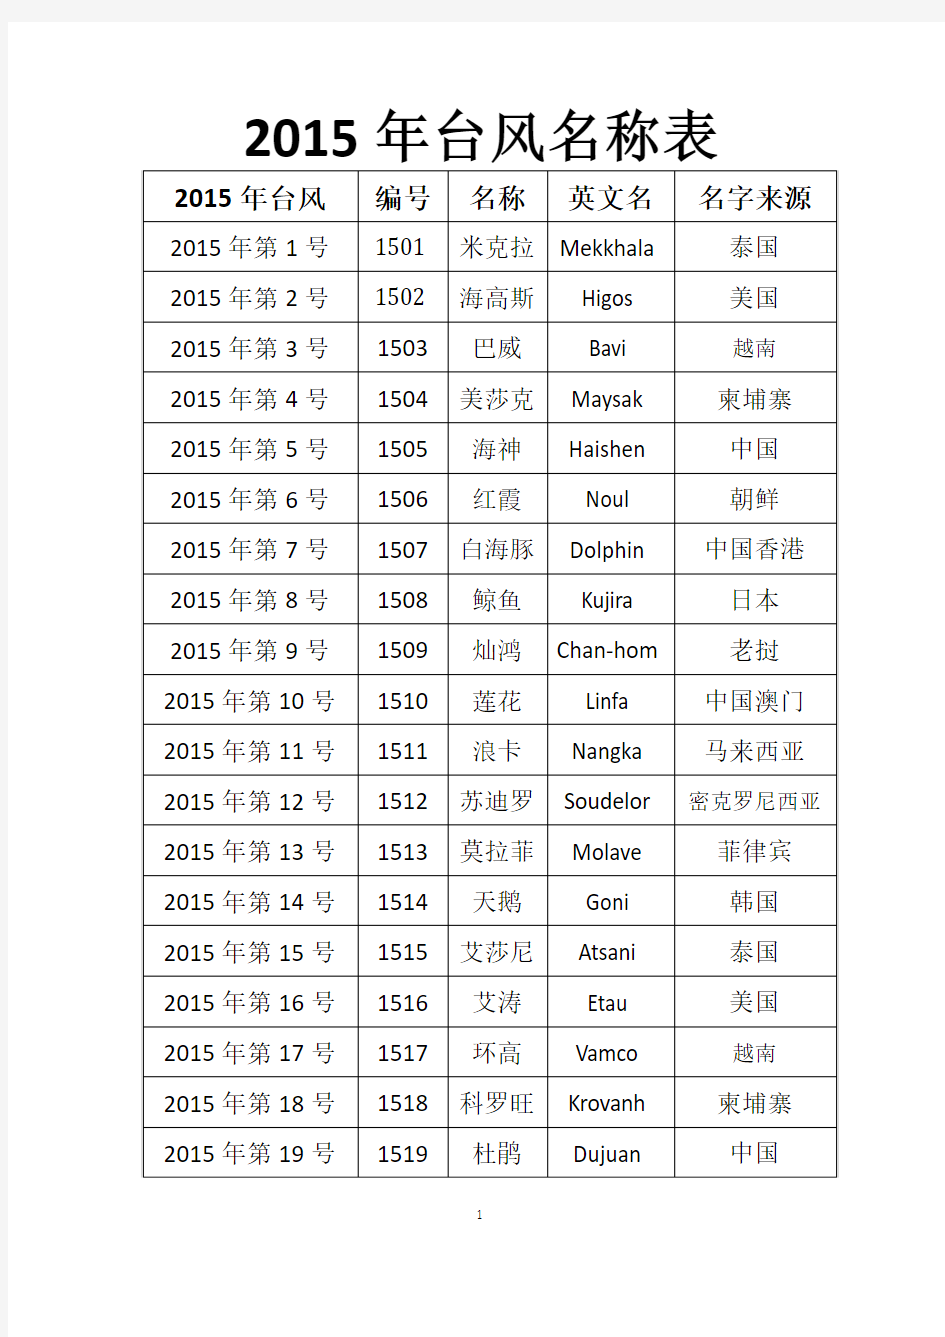 2015年台风命名表